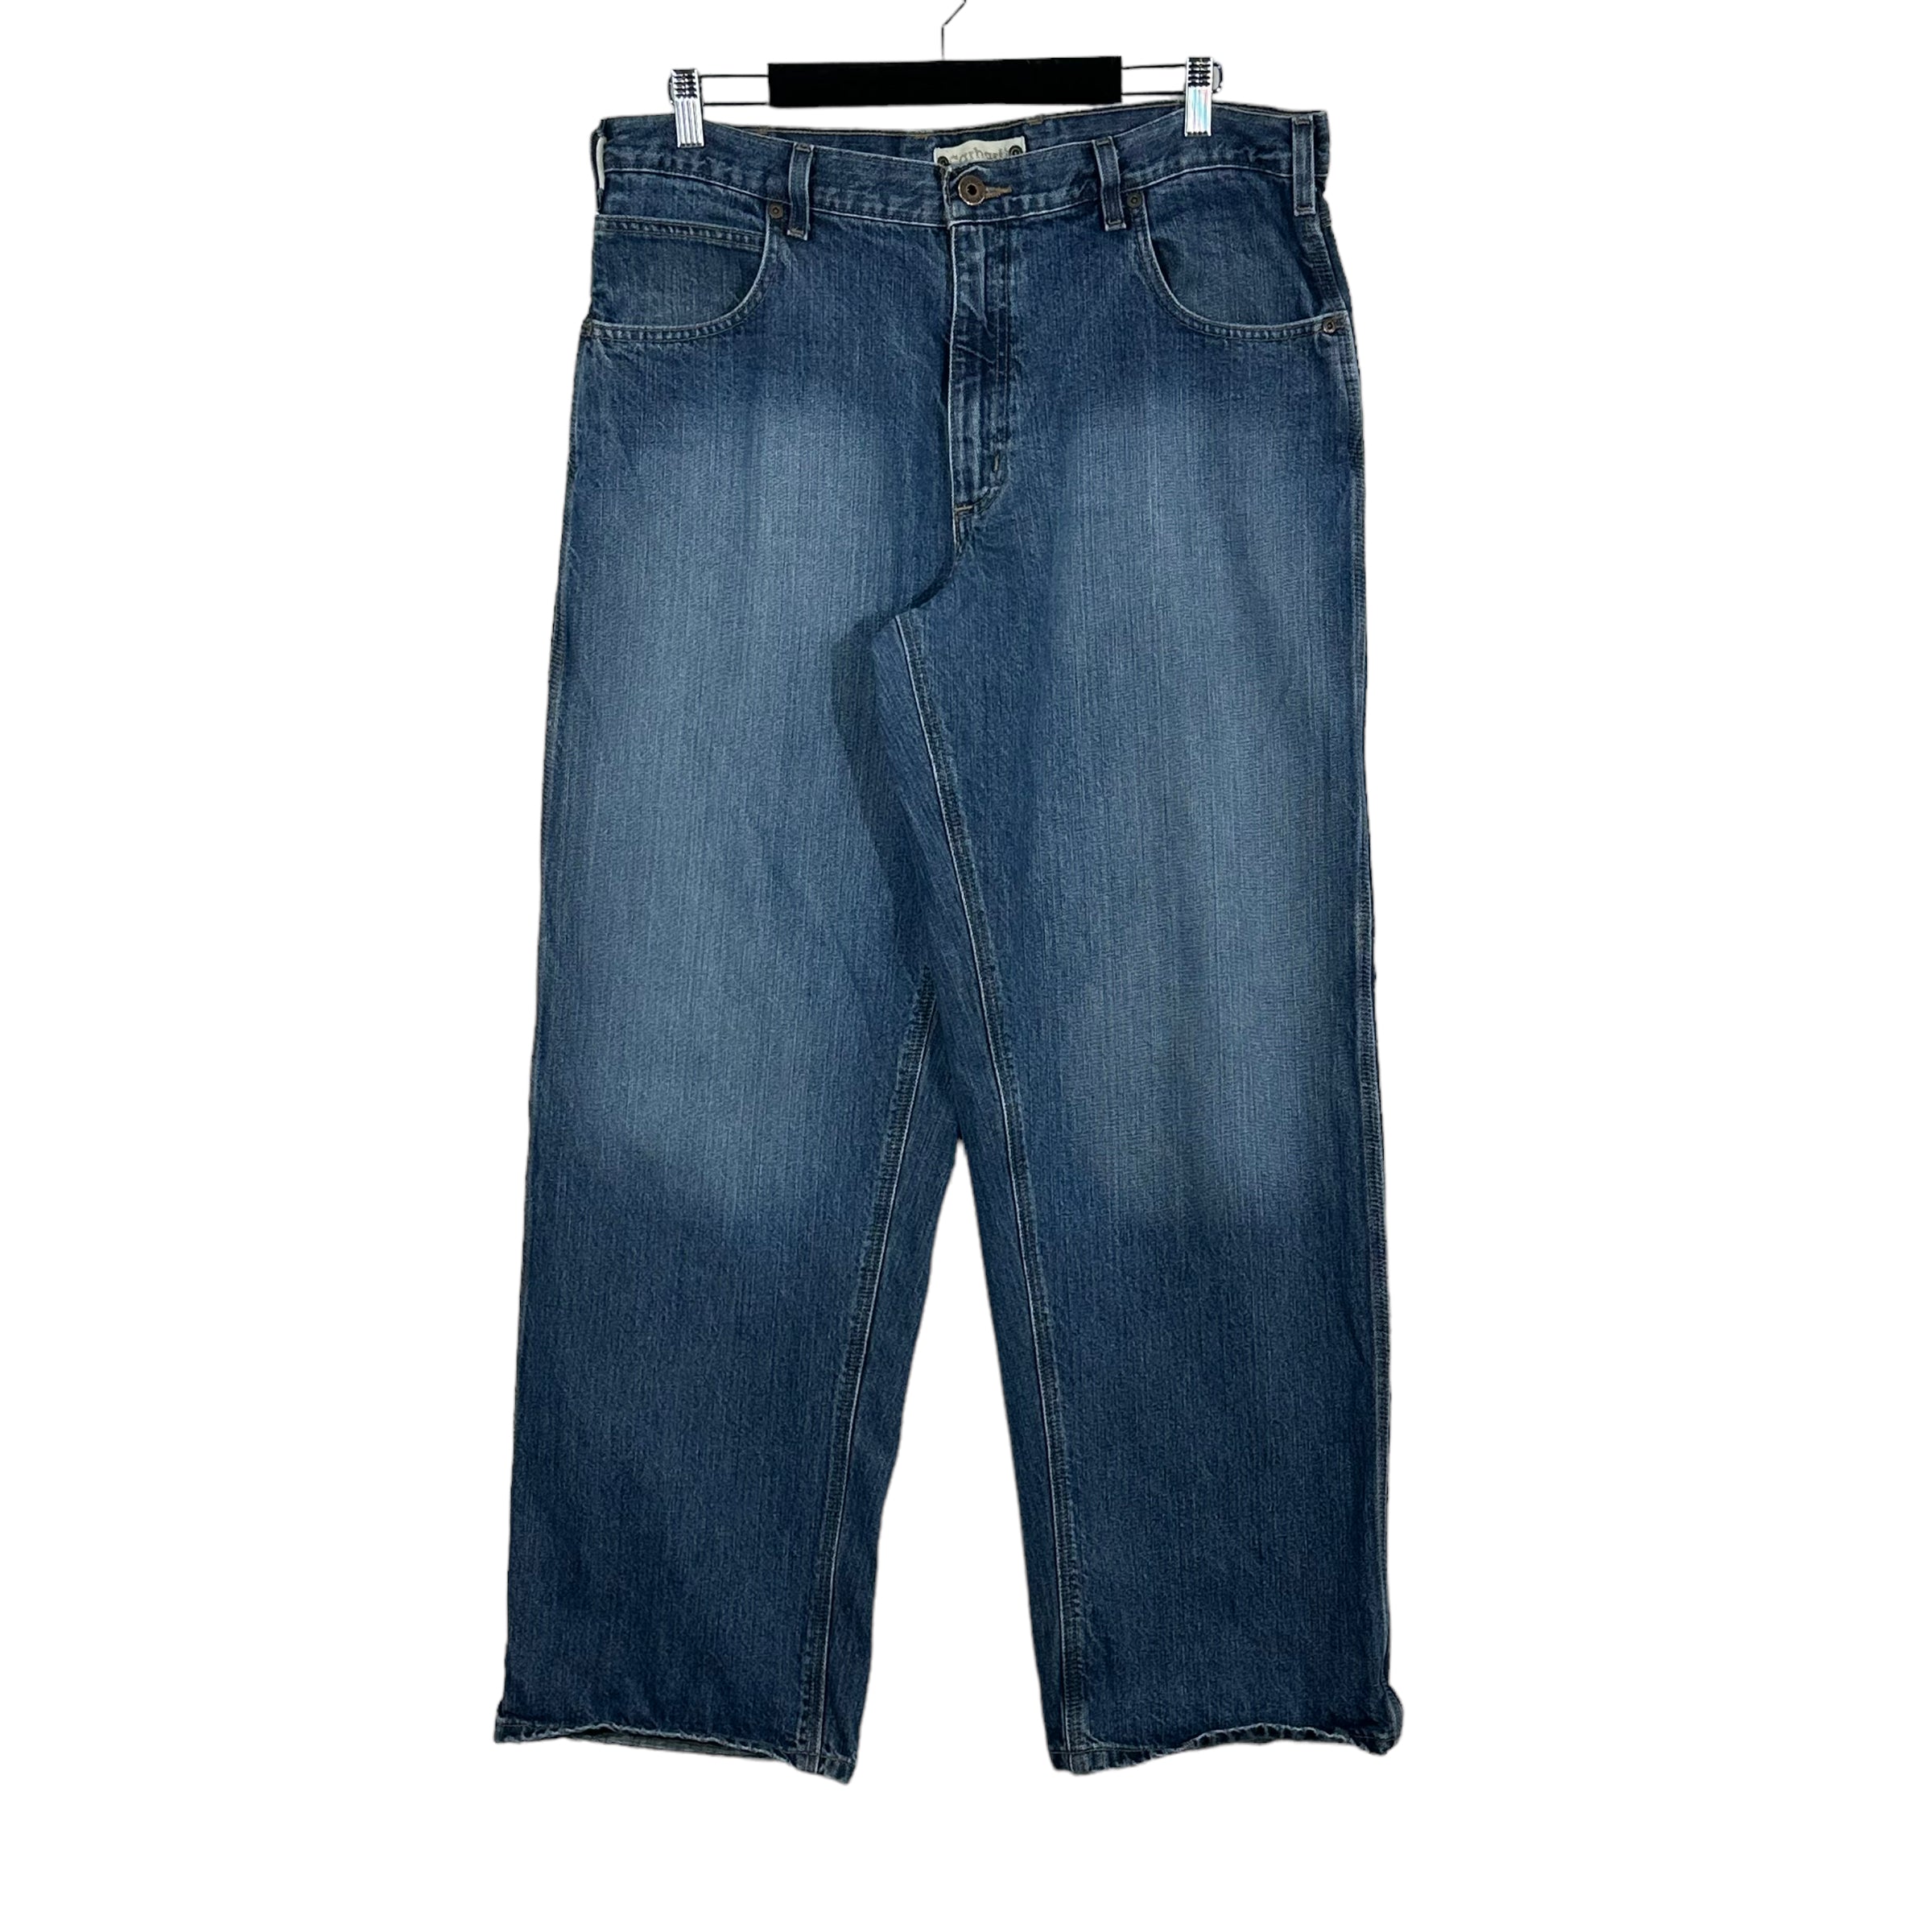 Vintage Carhartt Dark Wash Straight Leg Denim Jeans